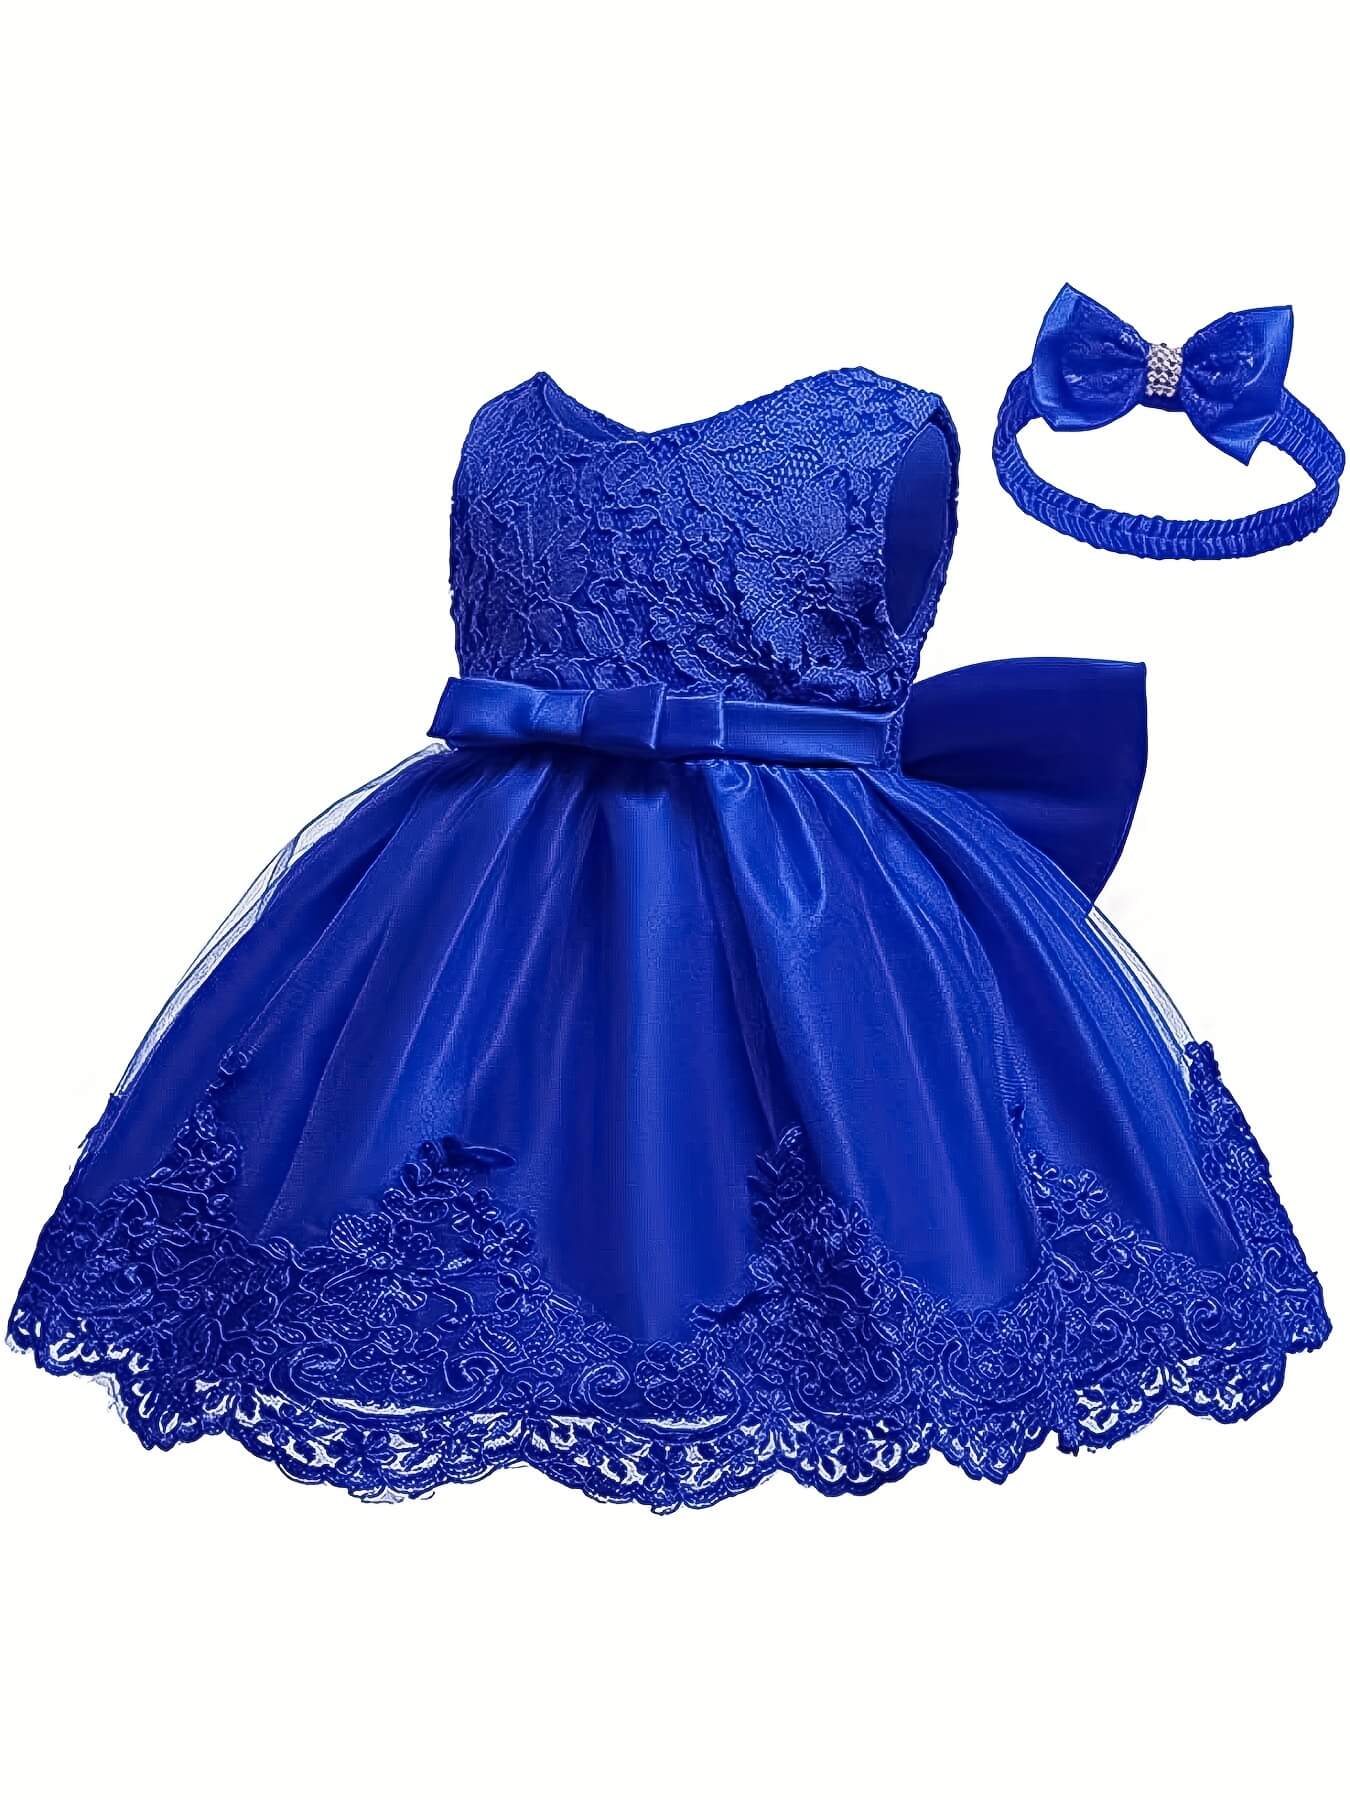 Bowknot Sleeveless Lace Girls Princess Dress